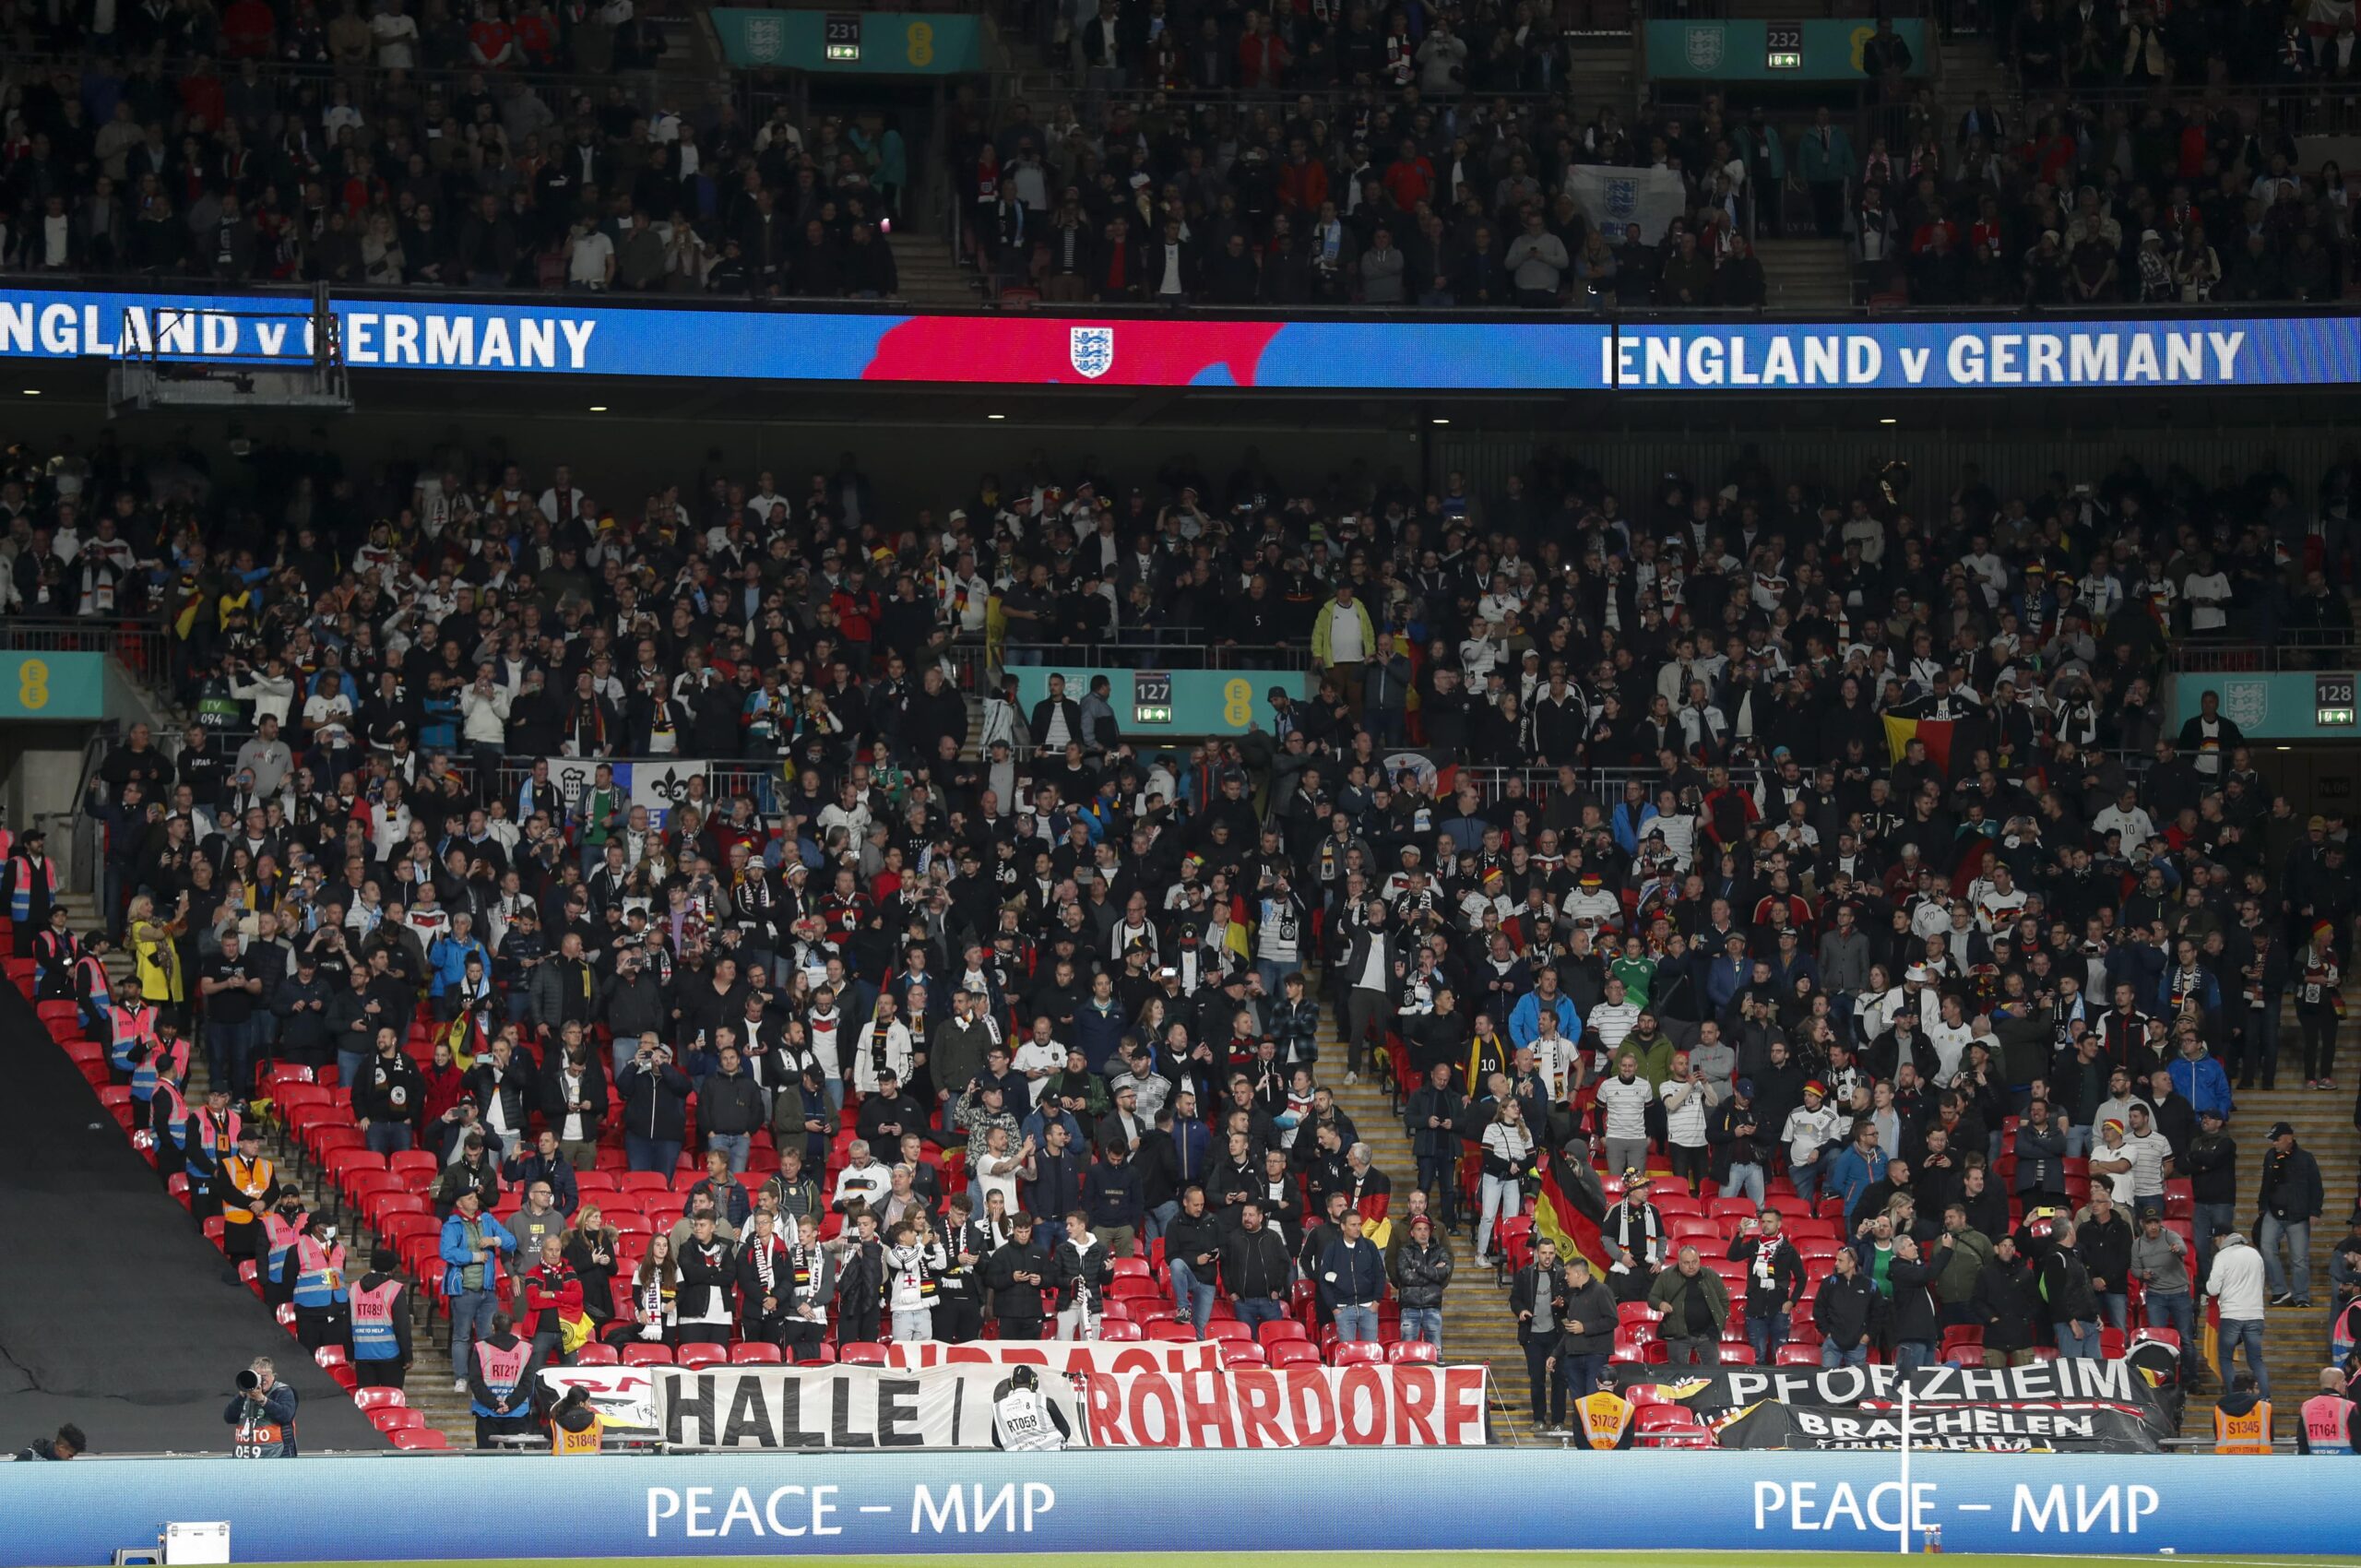 Vācijas izlases fani izraisa haosu un paniku angļu bārā